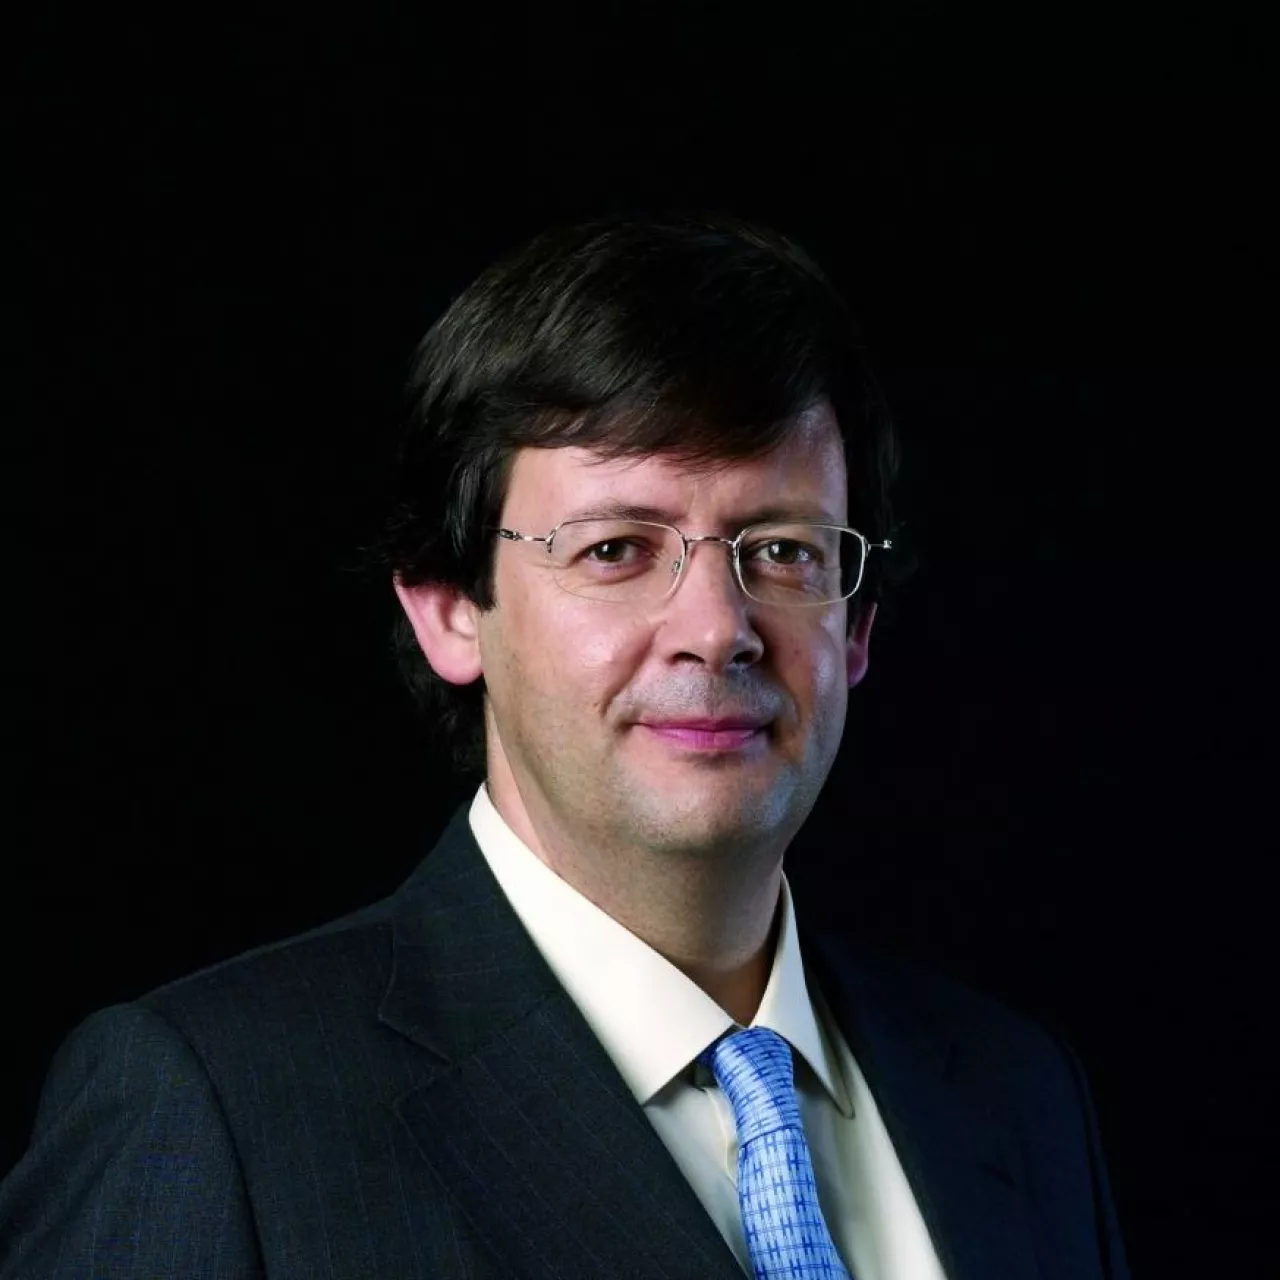 (Pedro Soares dos Santos, prezes i CEO grupy Jeronimo Martins, fot. mat.pras.)